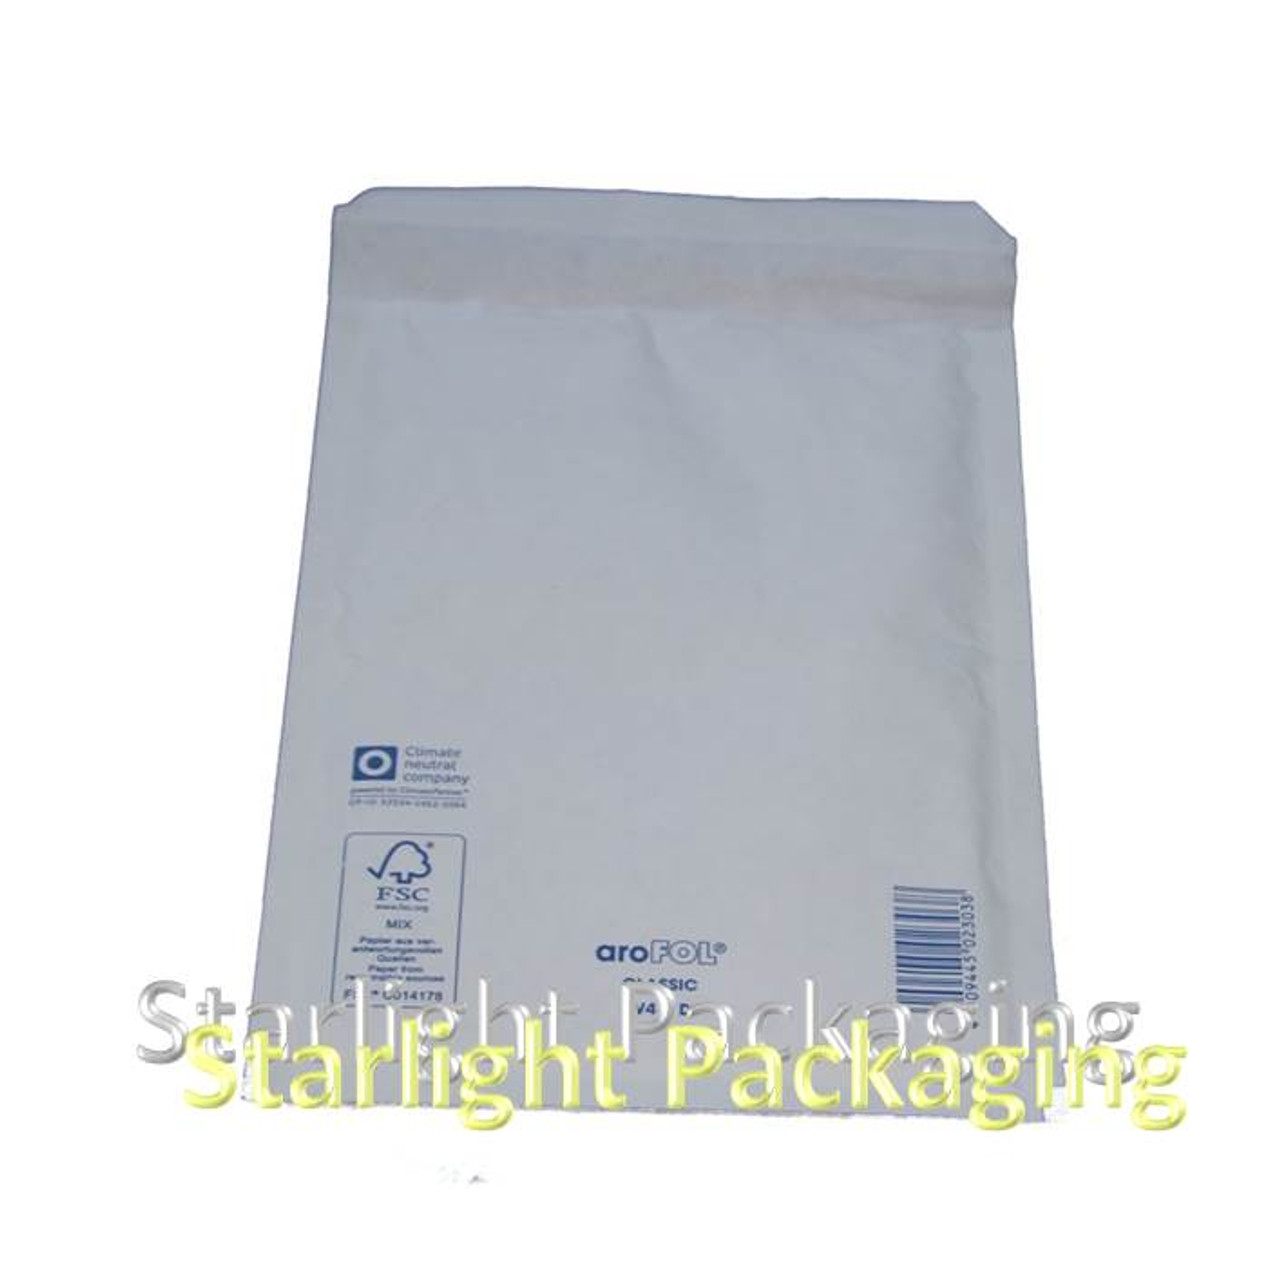 Case of 100 - Size 6 220 x 340mm ( 8.5" x 13.5" ) White Kraft Postal bags